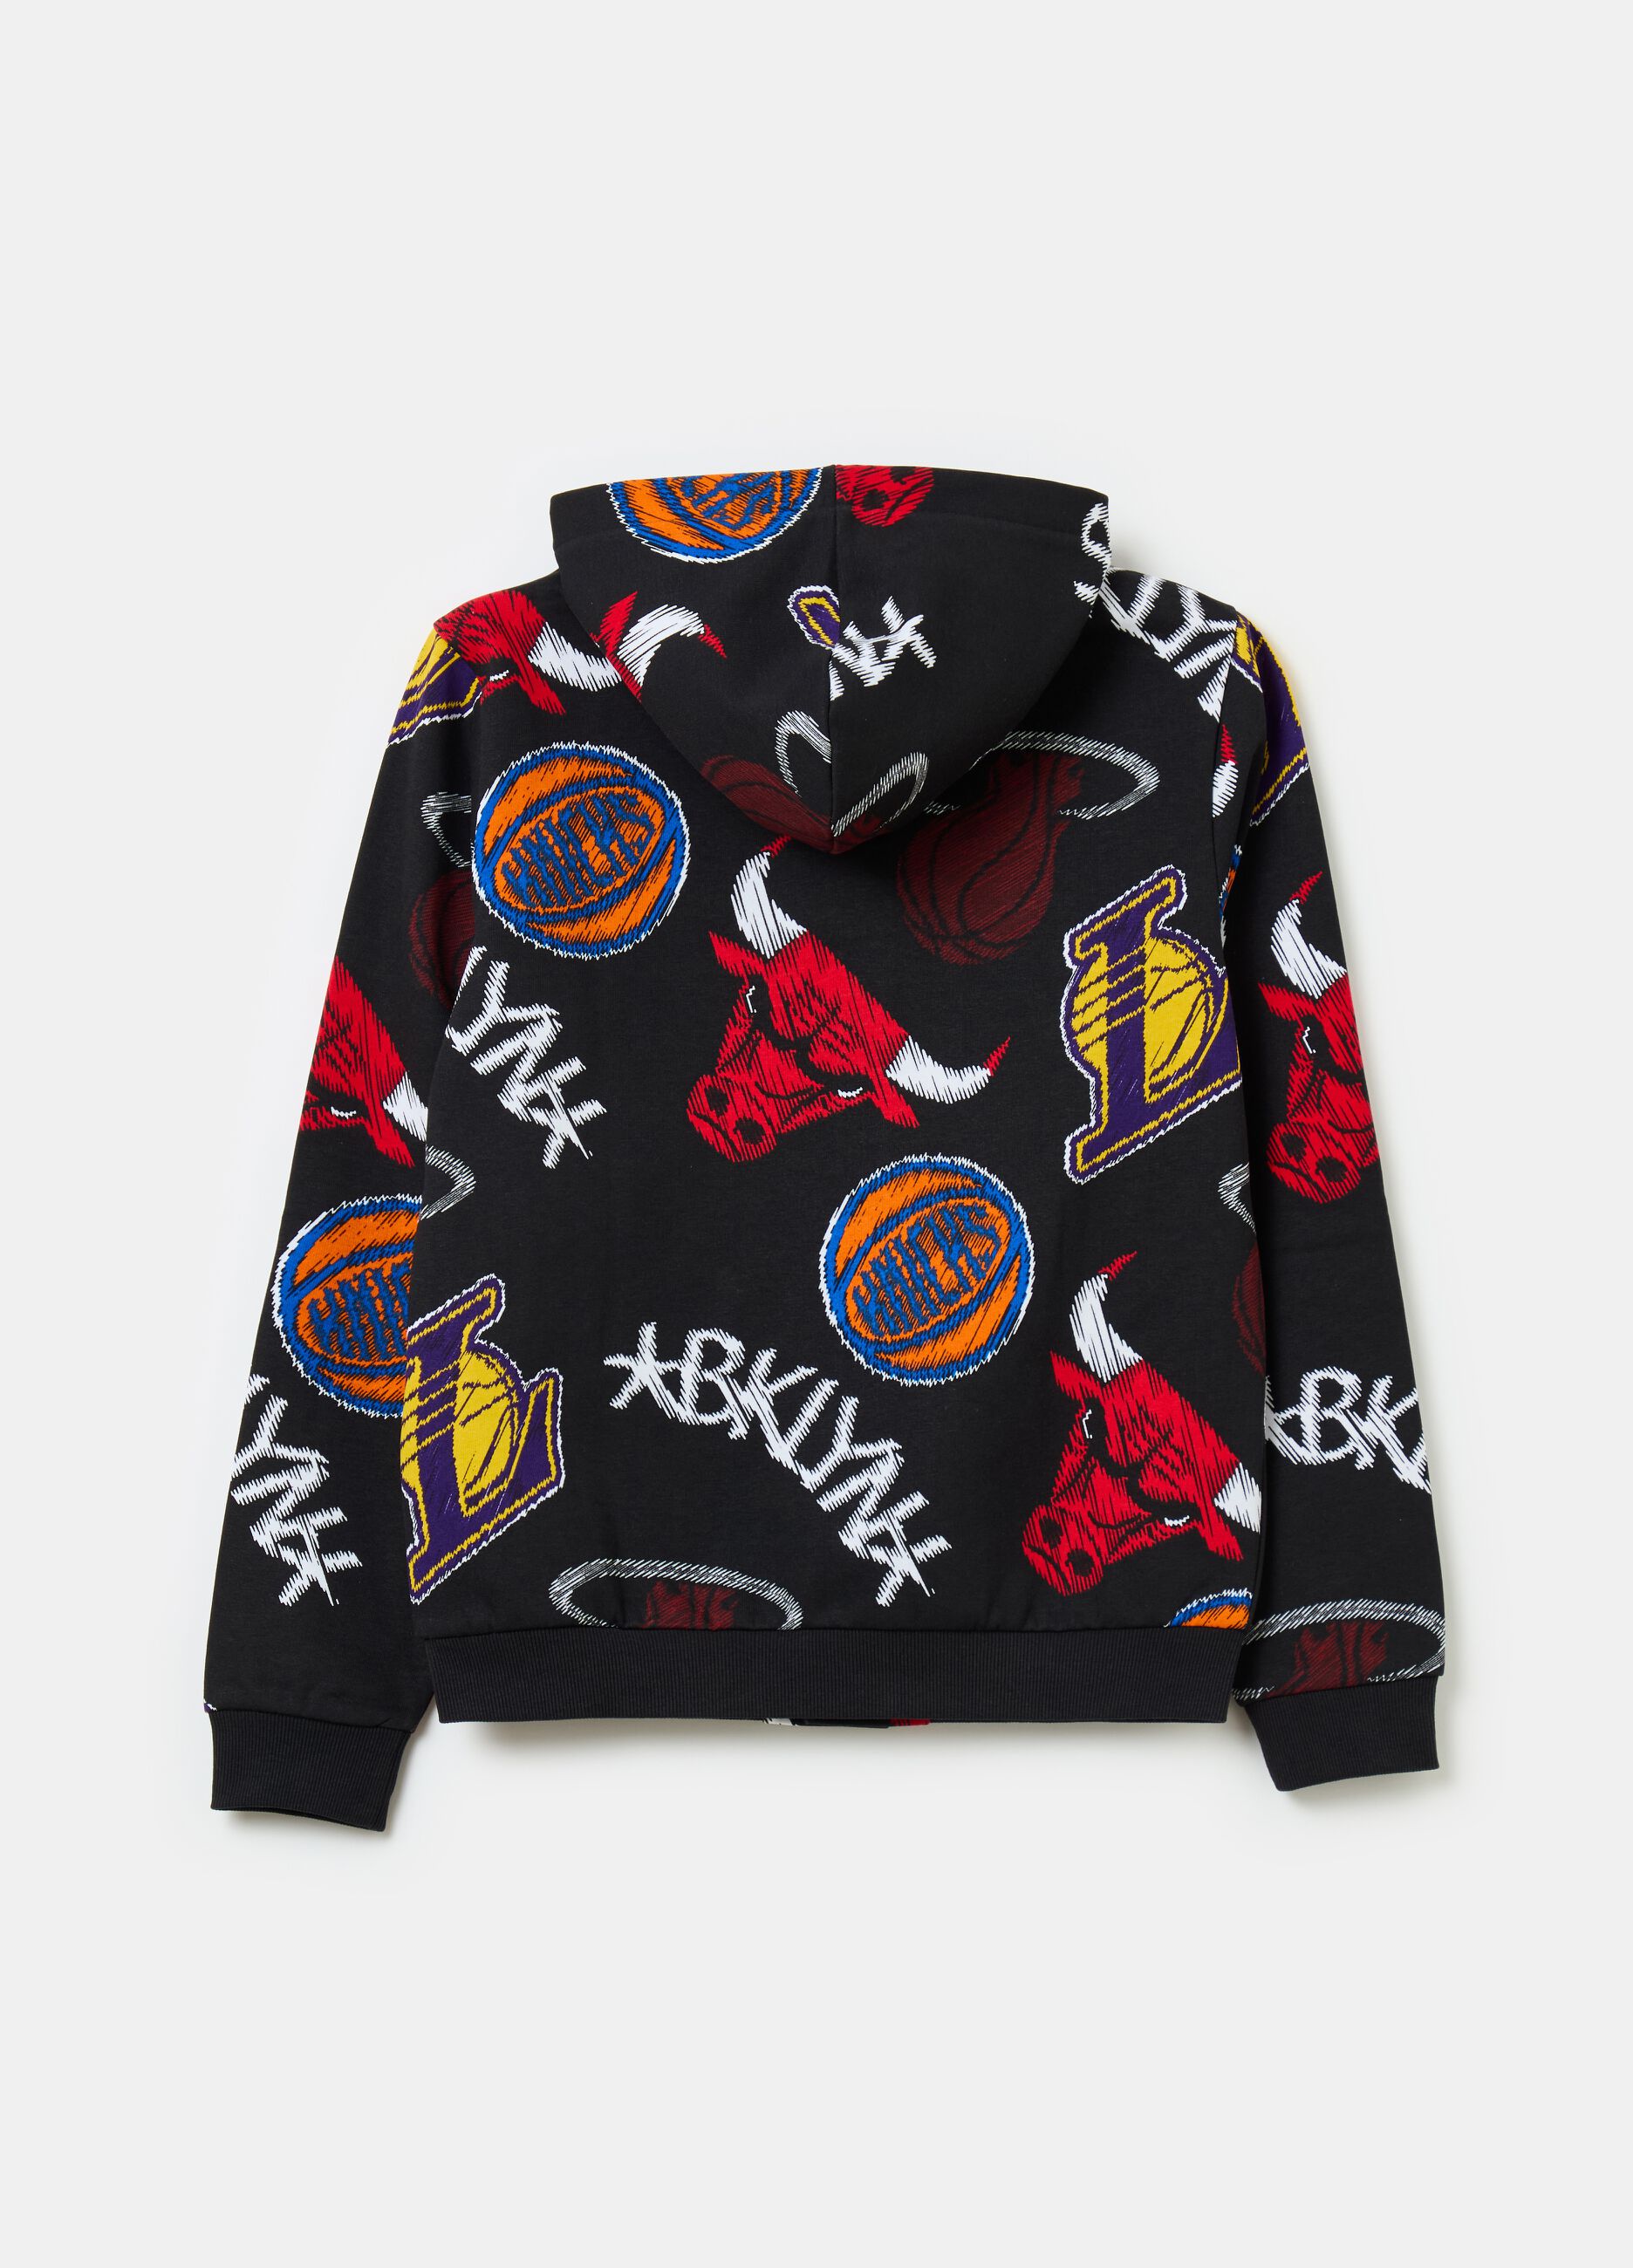 Sweatshirt with hood and NBA print